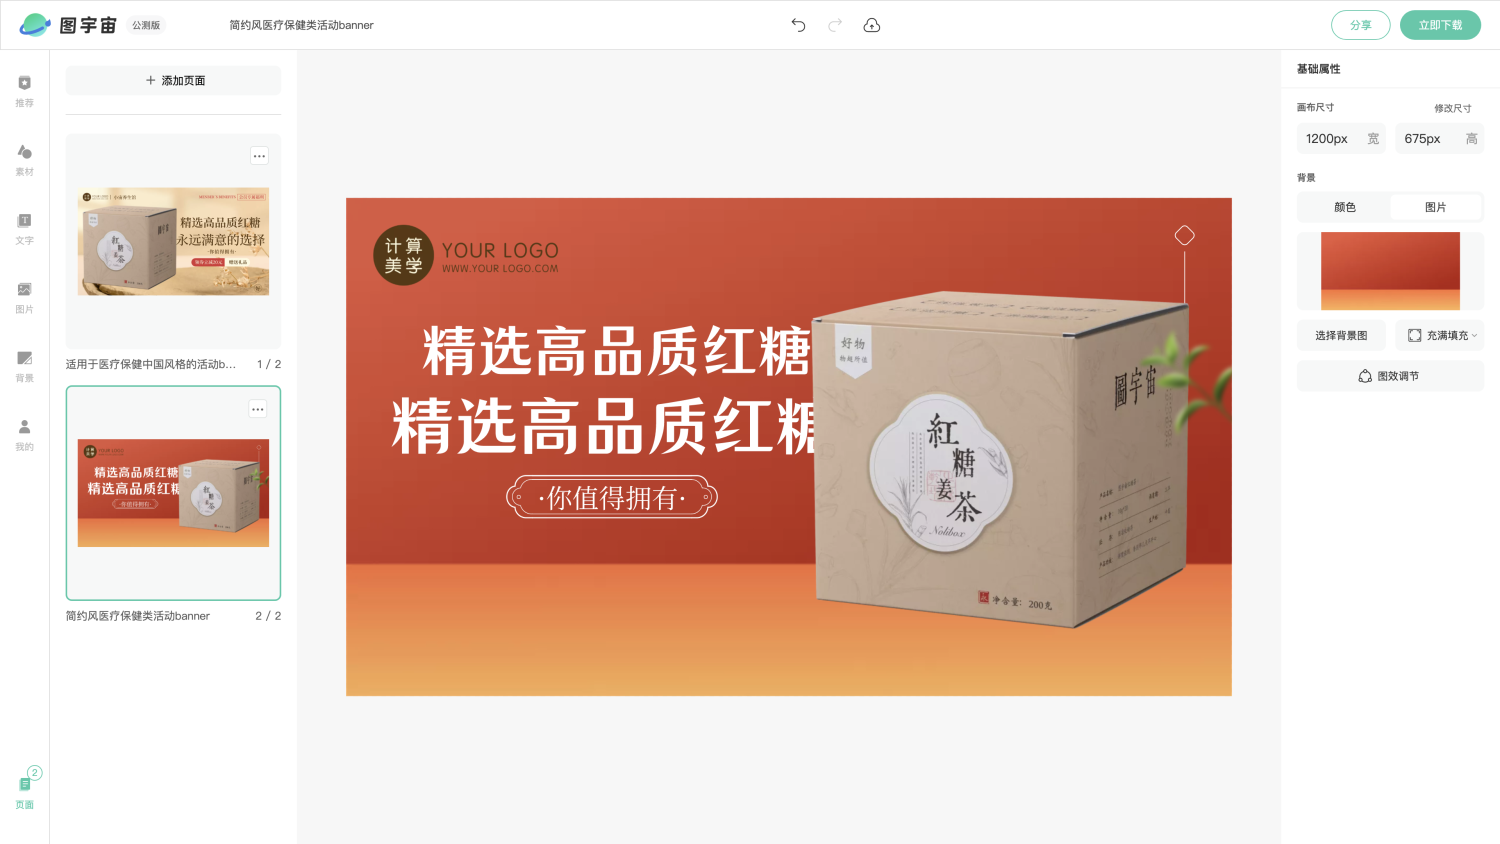 图宇宙-编辑器-适用于医疗保健中国风格的活动banner